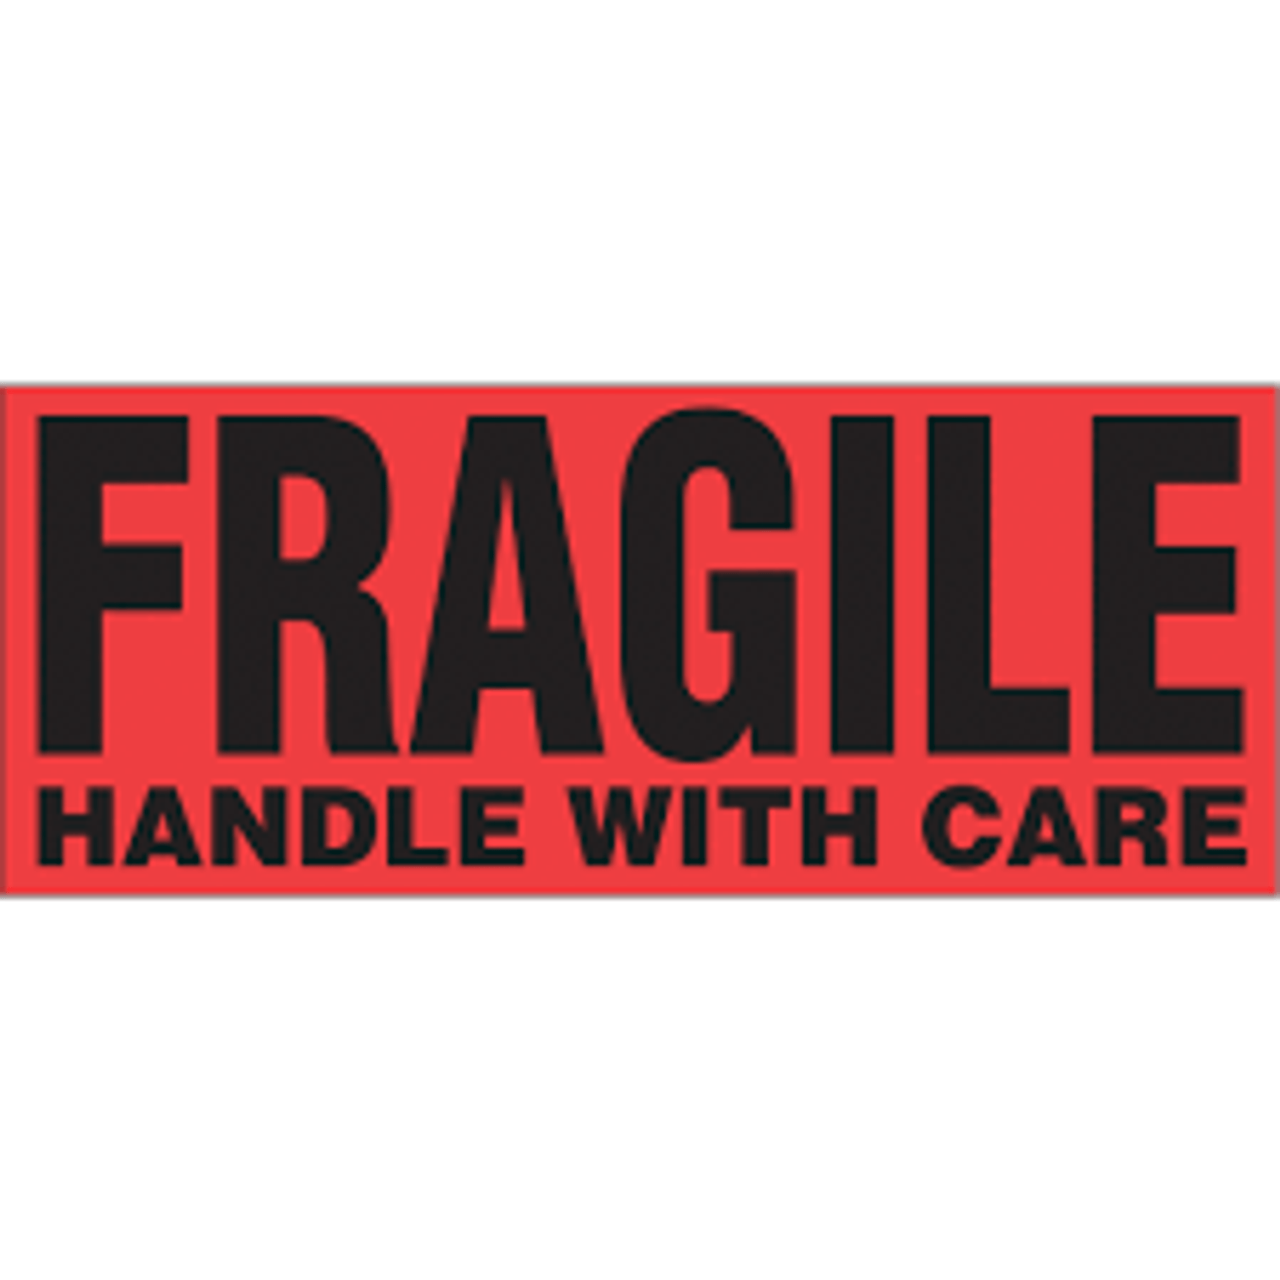 Étiquettes traitement spécial Fragile Handle with Care 5x2 Noir Rouge